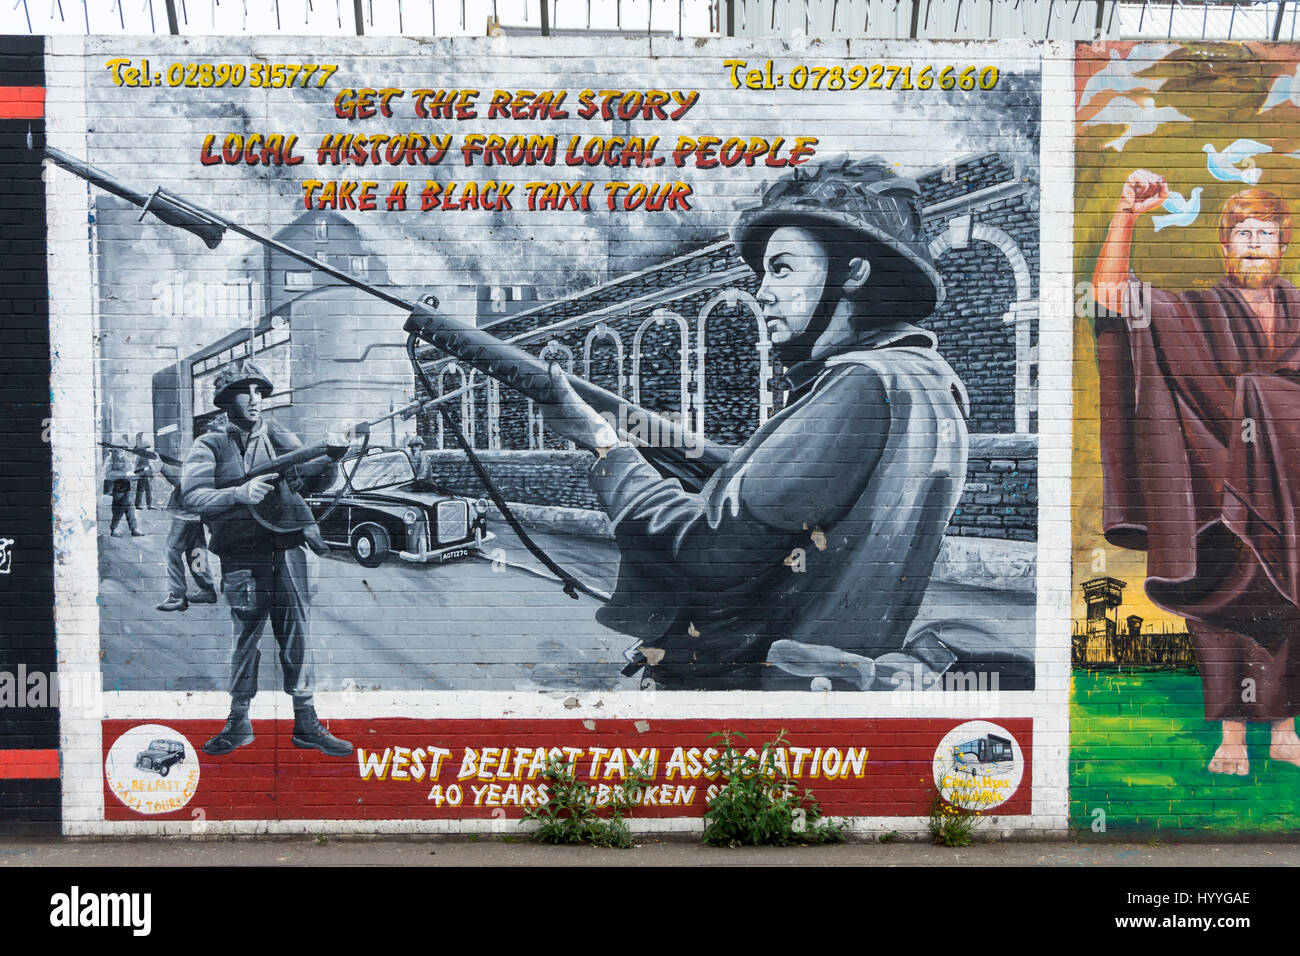 L'Ouest de Belfast Association Taxi photo murale sur la Falls Road, Belfast, County Antrim, Northern Ireland, UK Banque D'Images